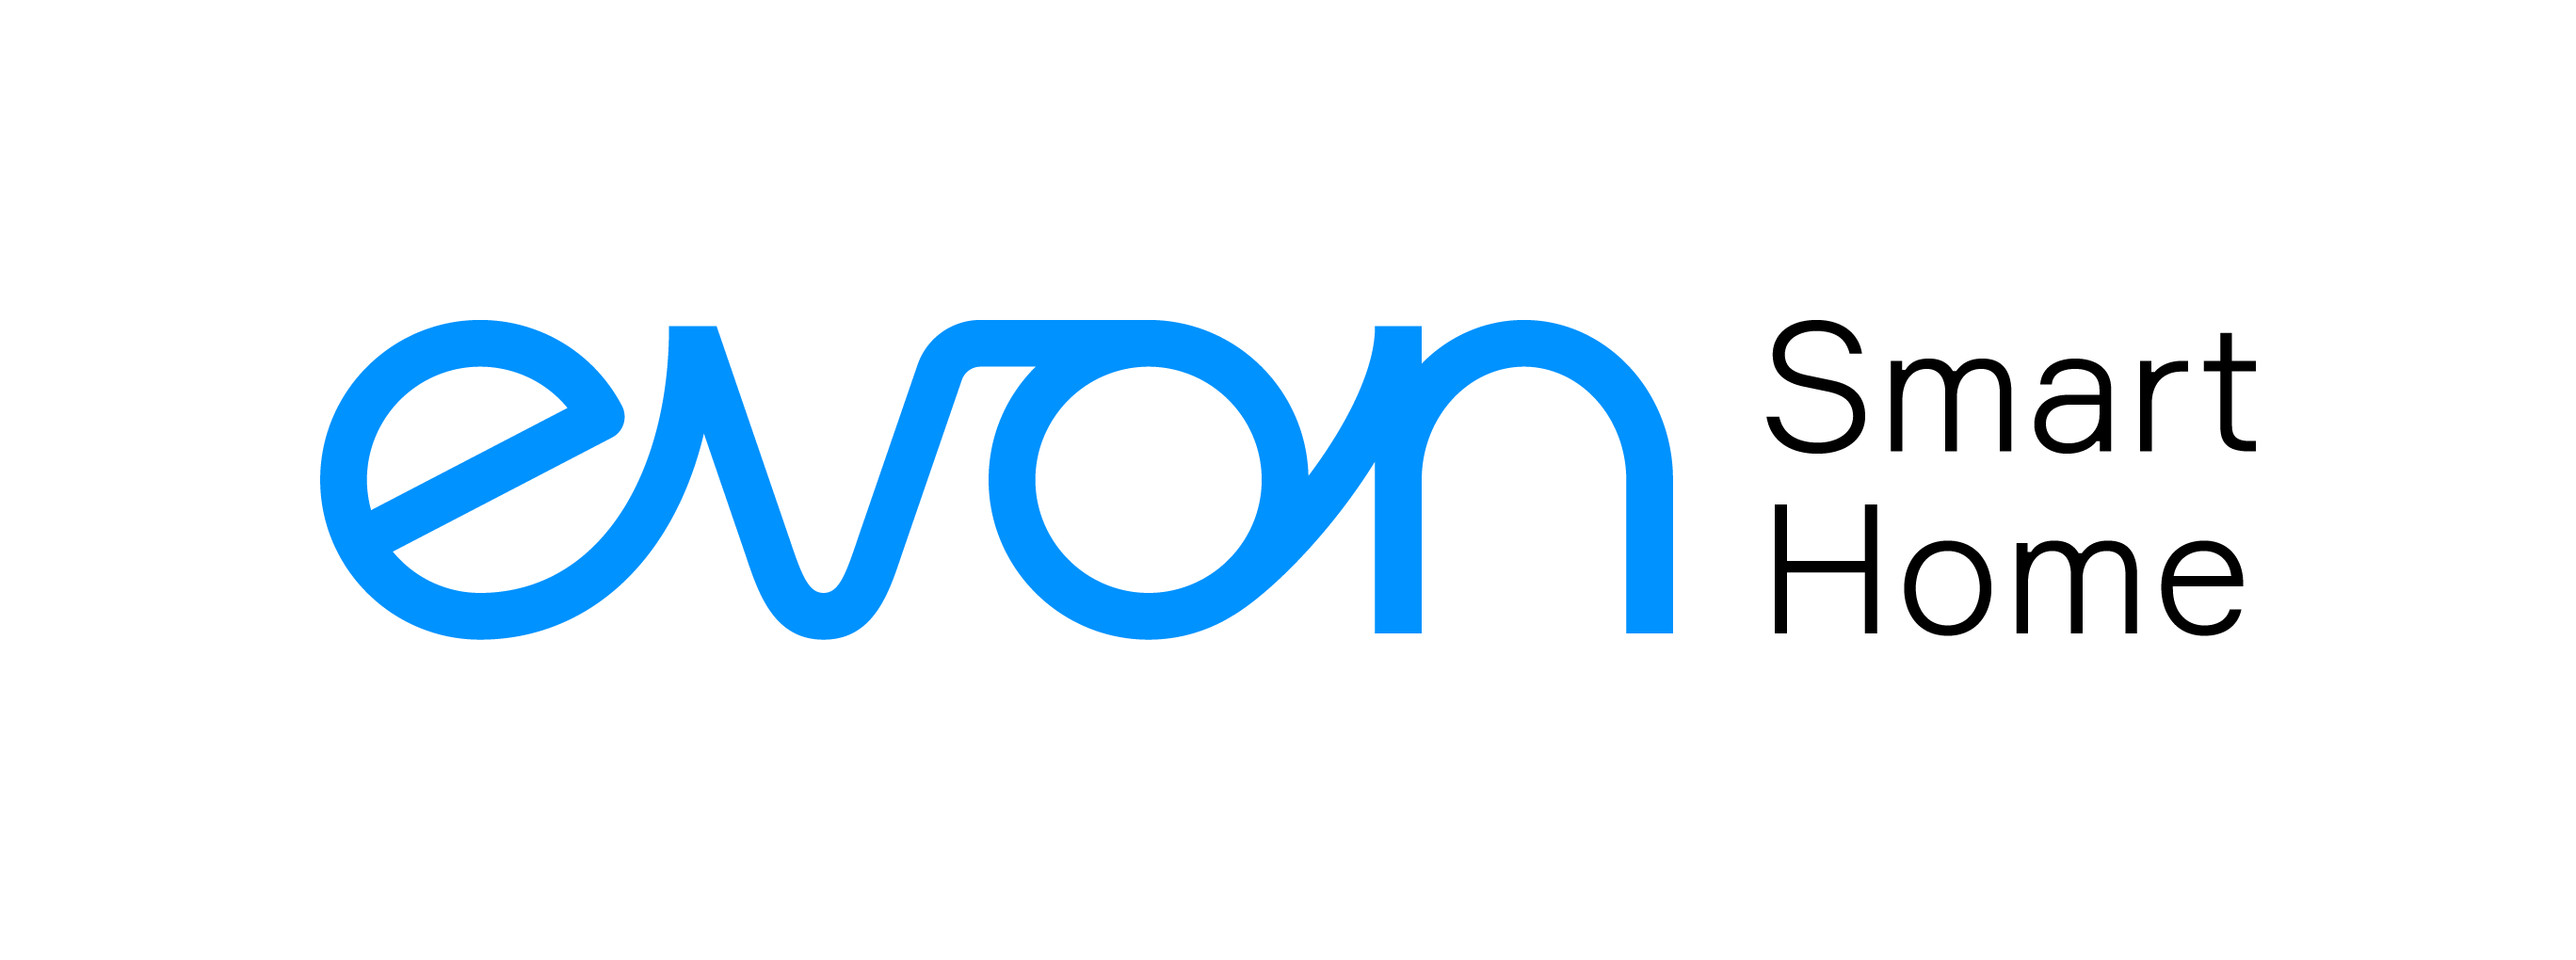 evon logo